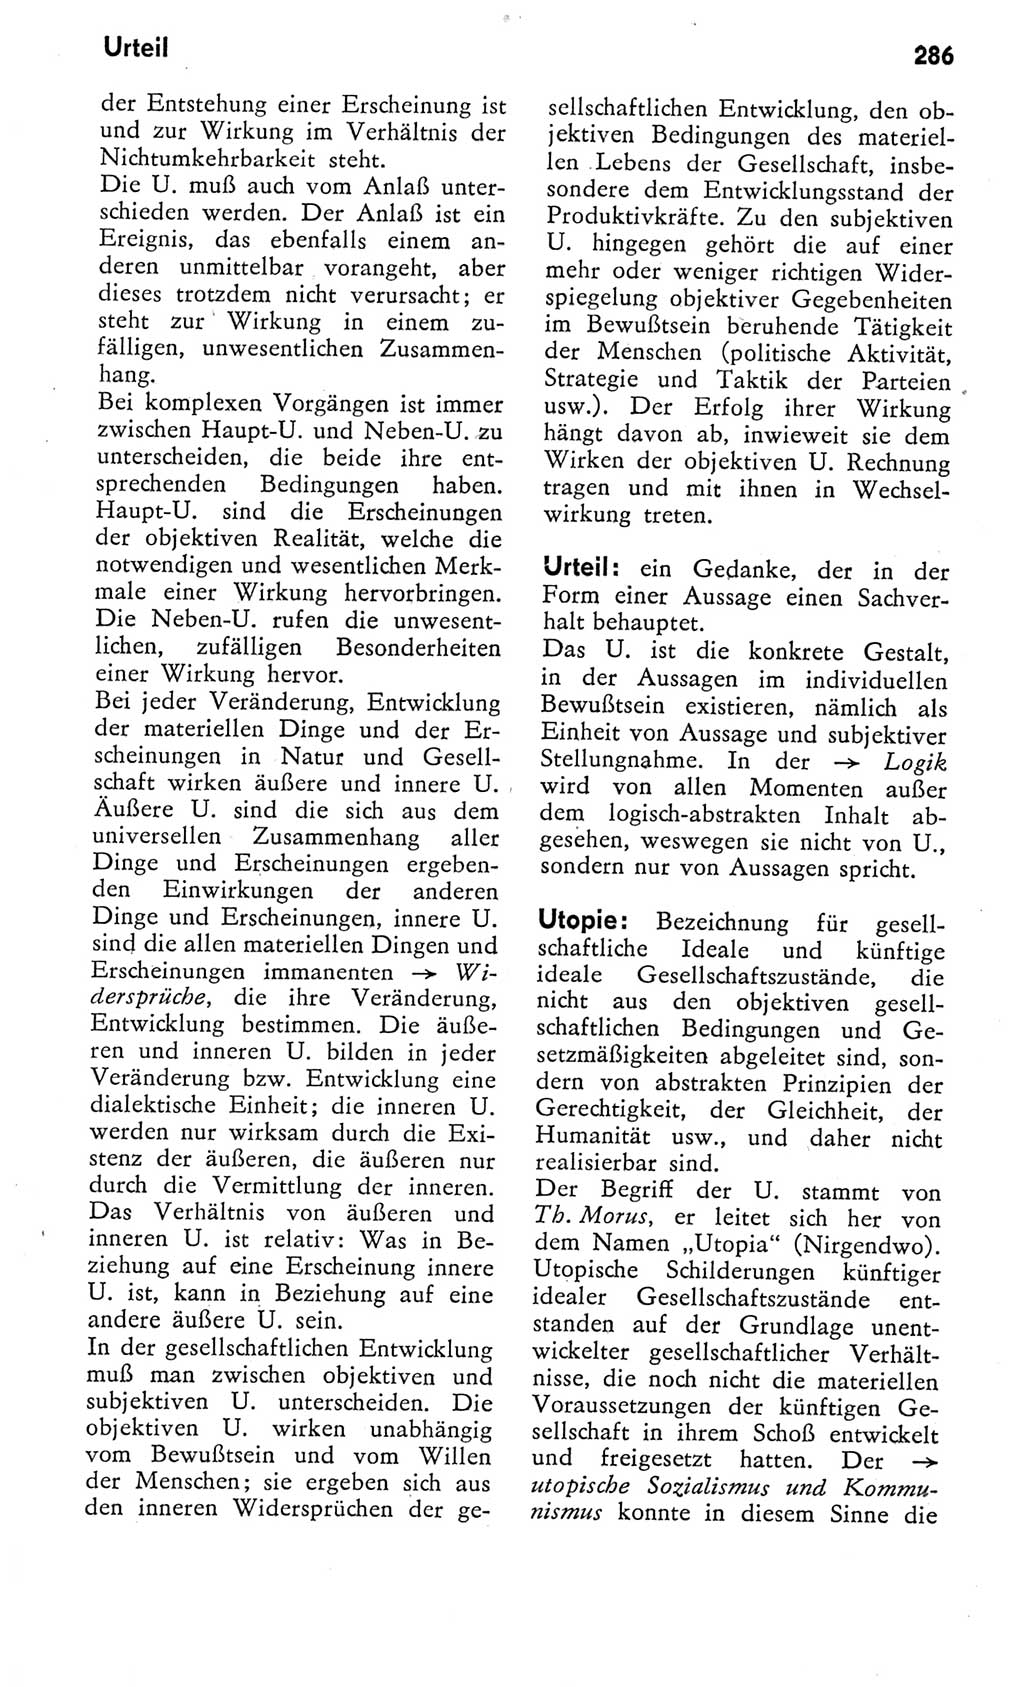 Kleines Wörterbuch der marxistisch-leninistischen Philosophie [Deutsche Demokratische Republik (DDR)] 1975, Seite 286 (Kl. Wb. ML Phil. DDR 1975, S. 286)